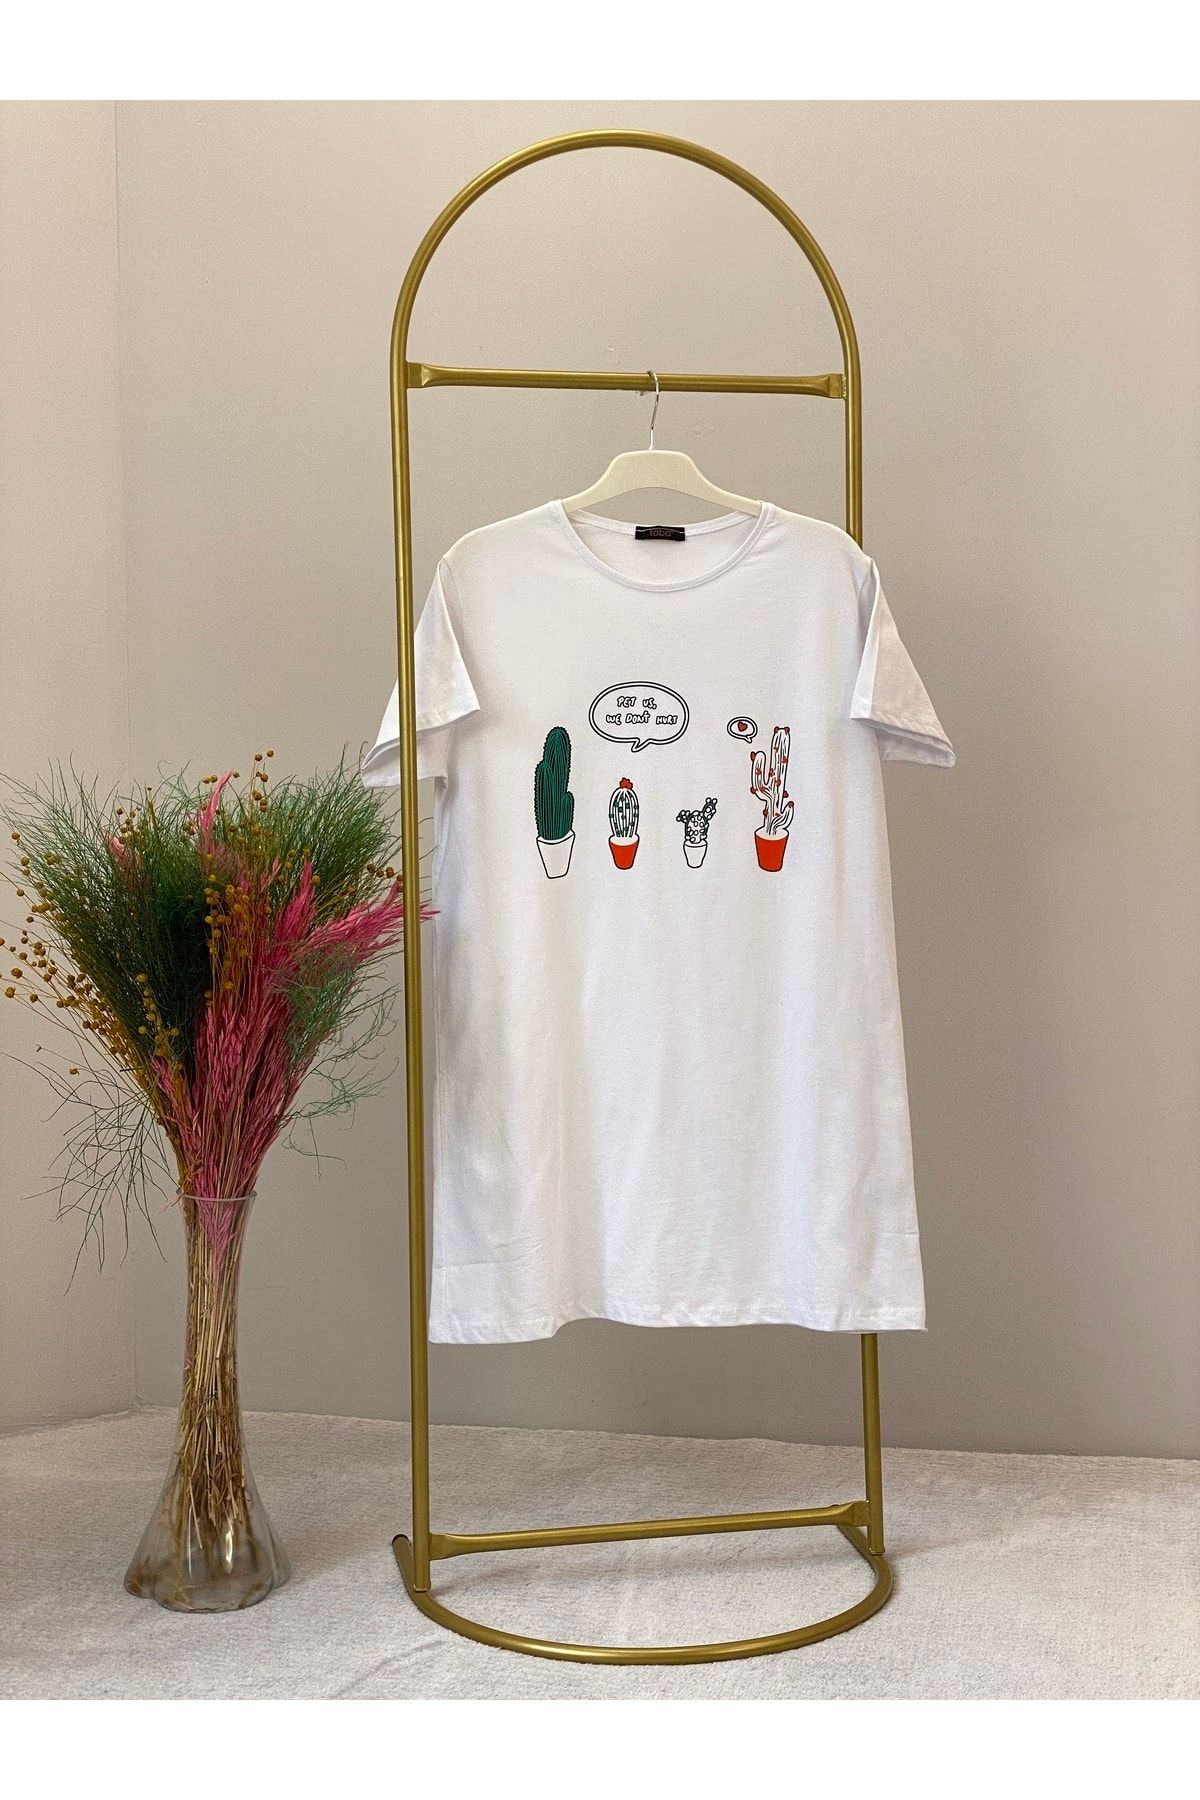 morlimo Kadın Oversize Pamuklu Renkli Kaktüs Baskılı T-shirt